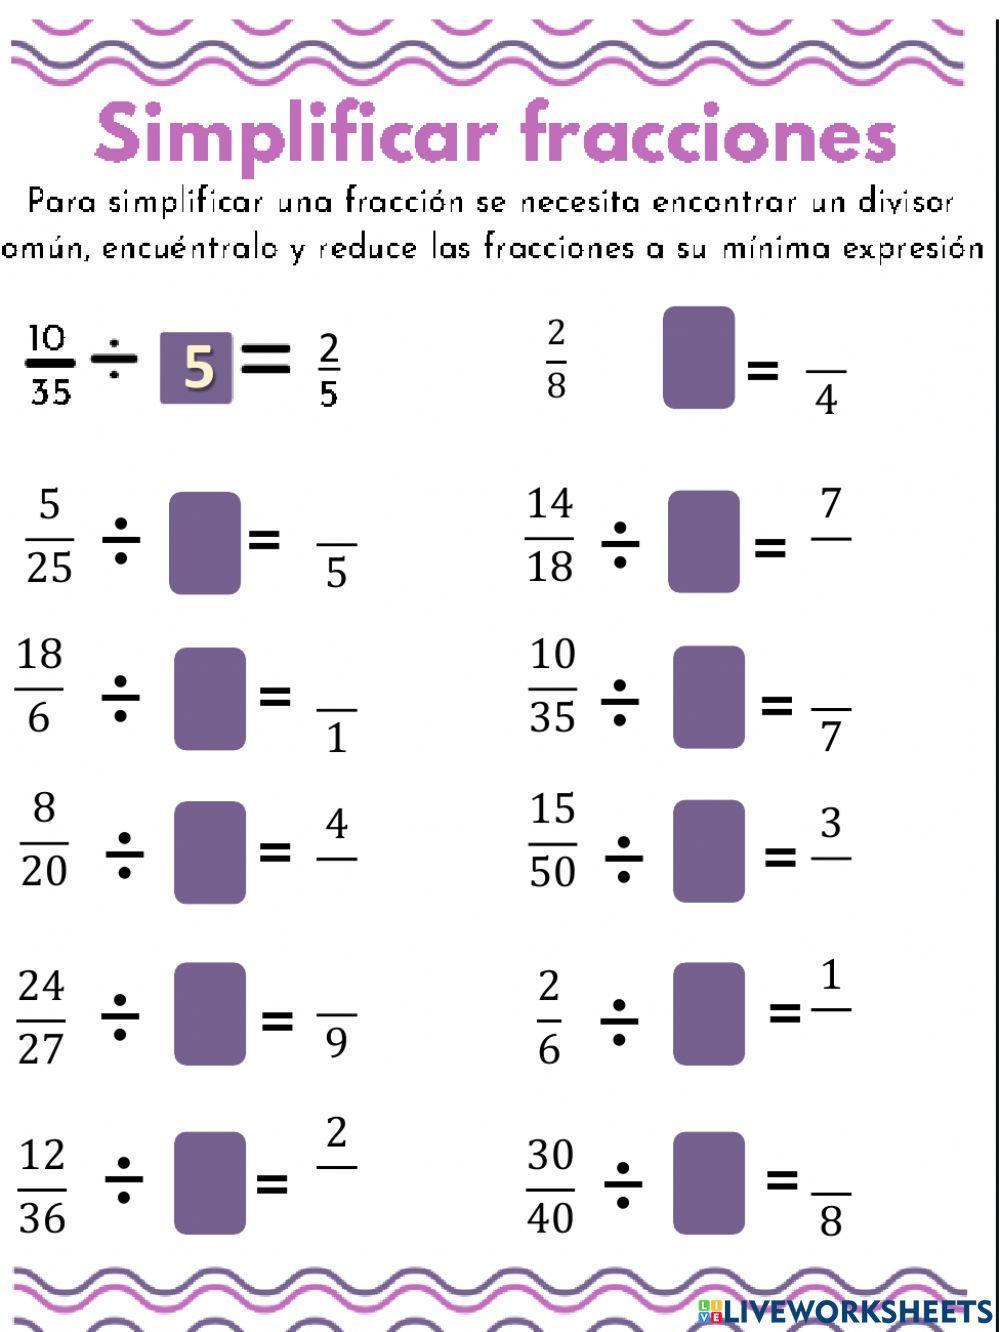 Simplificar fracciones activity for 5to